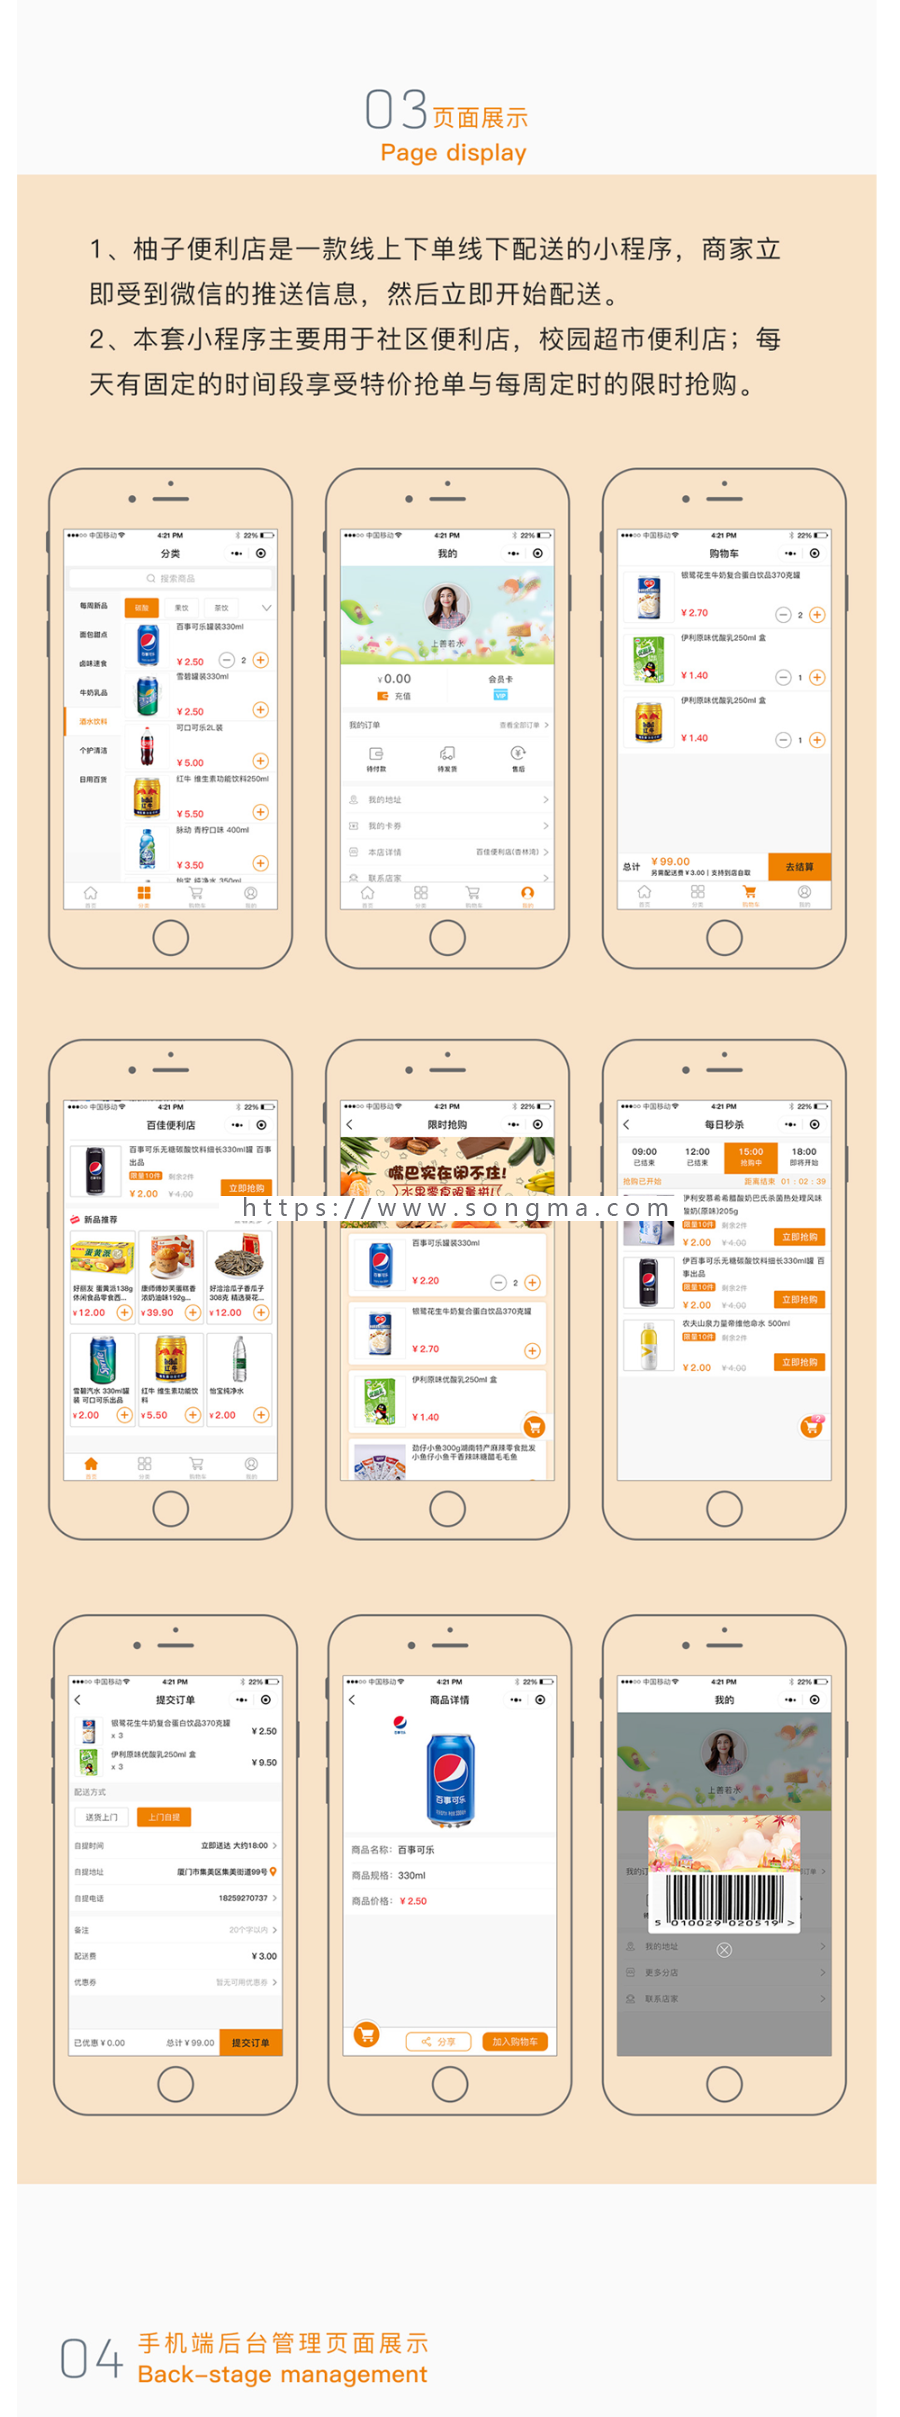 柚子便利店·超市无人货架·扫码购·小程序V1.1.4